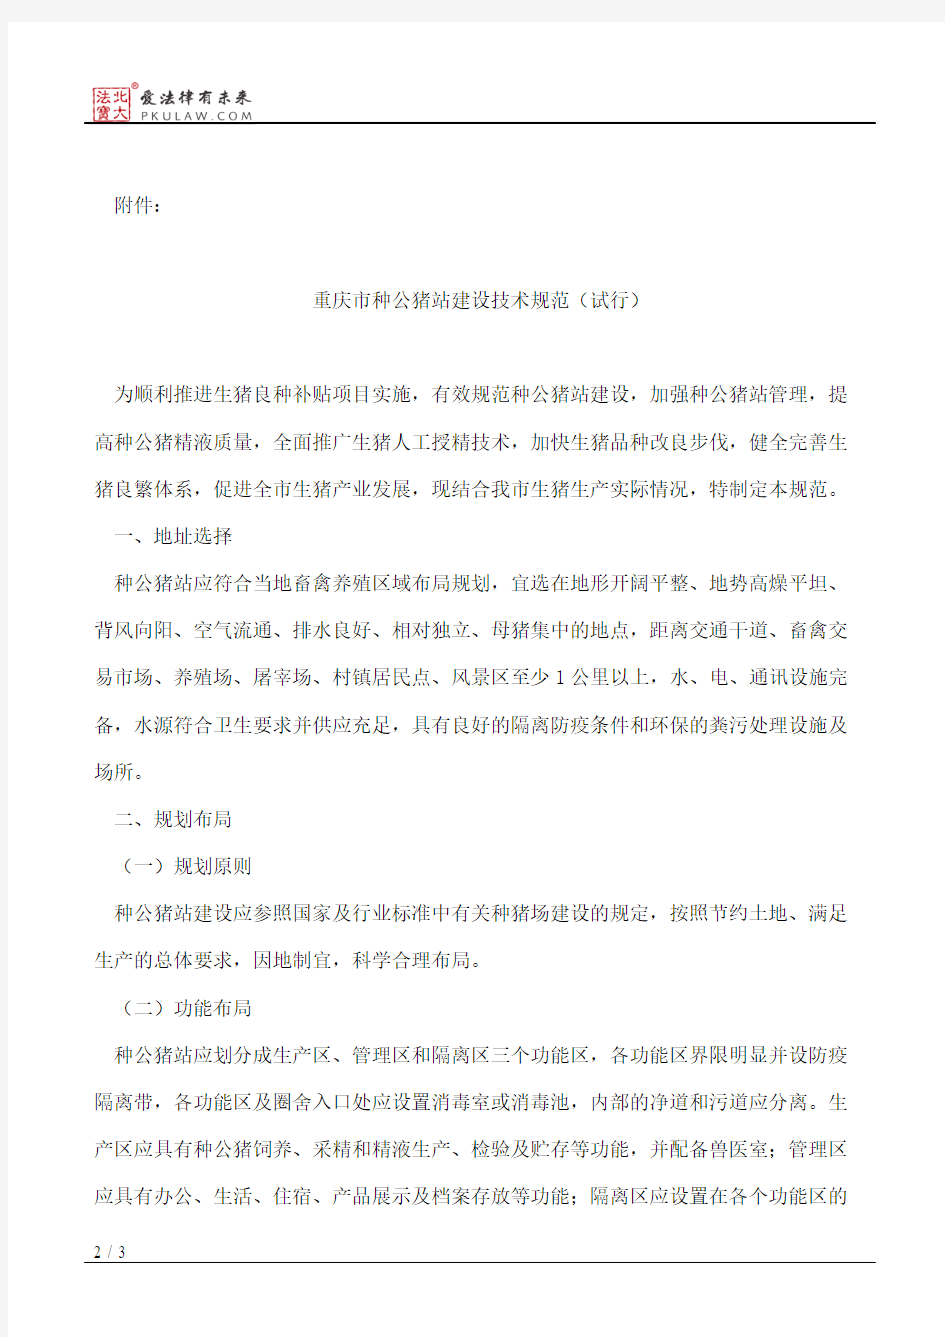 重庆市农业委员会关于印发《重庆市种公猪站建设技术规范(试行)》的通知